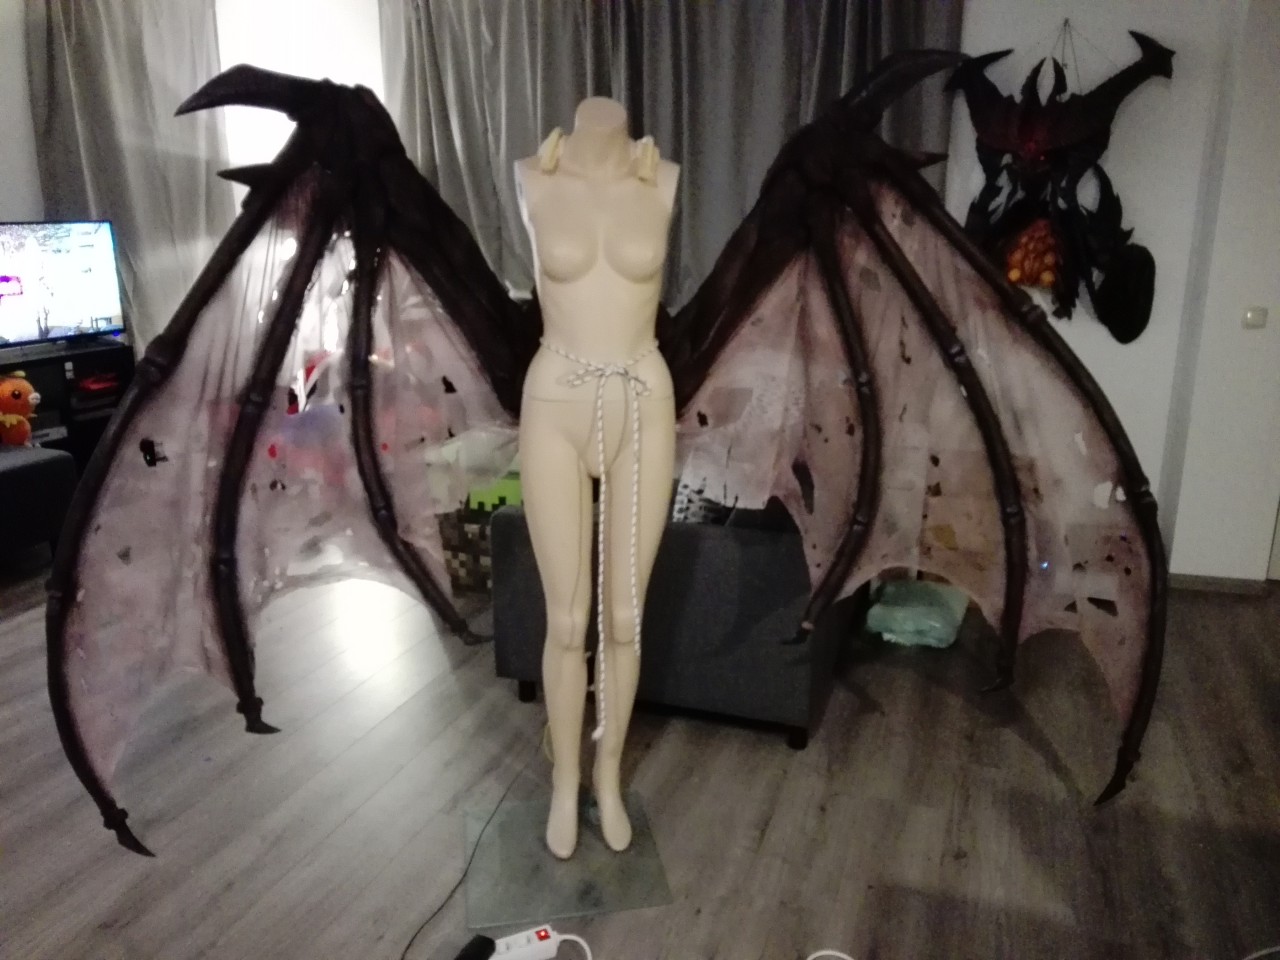 folded demon wings